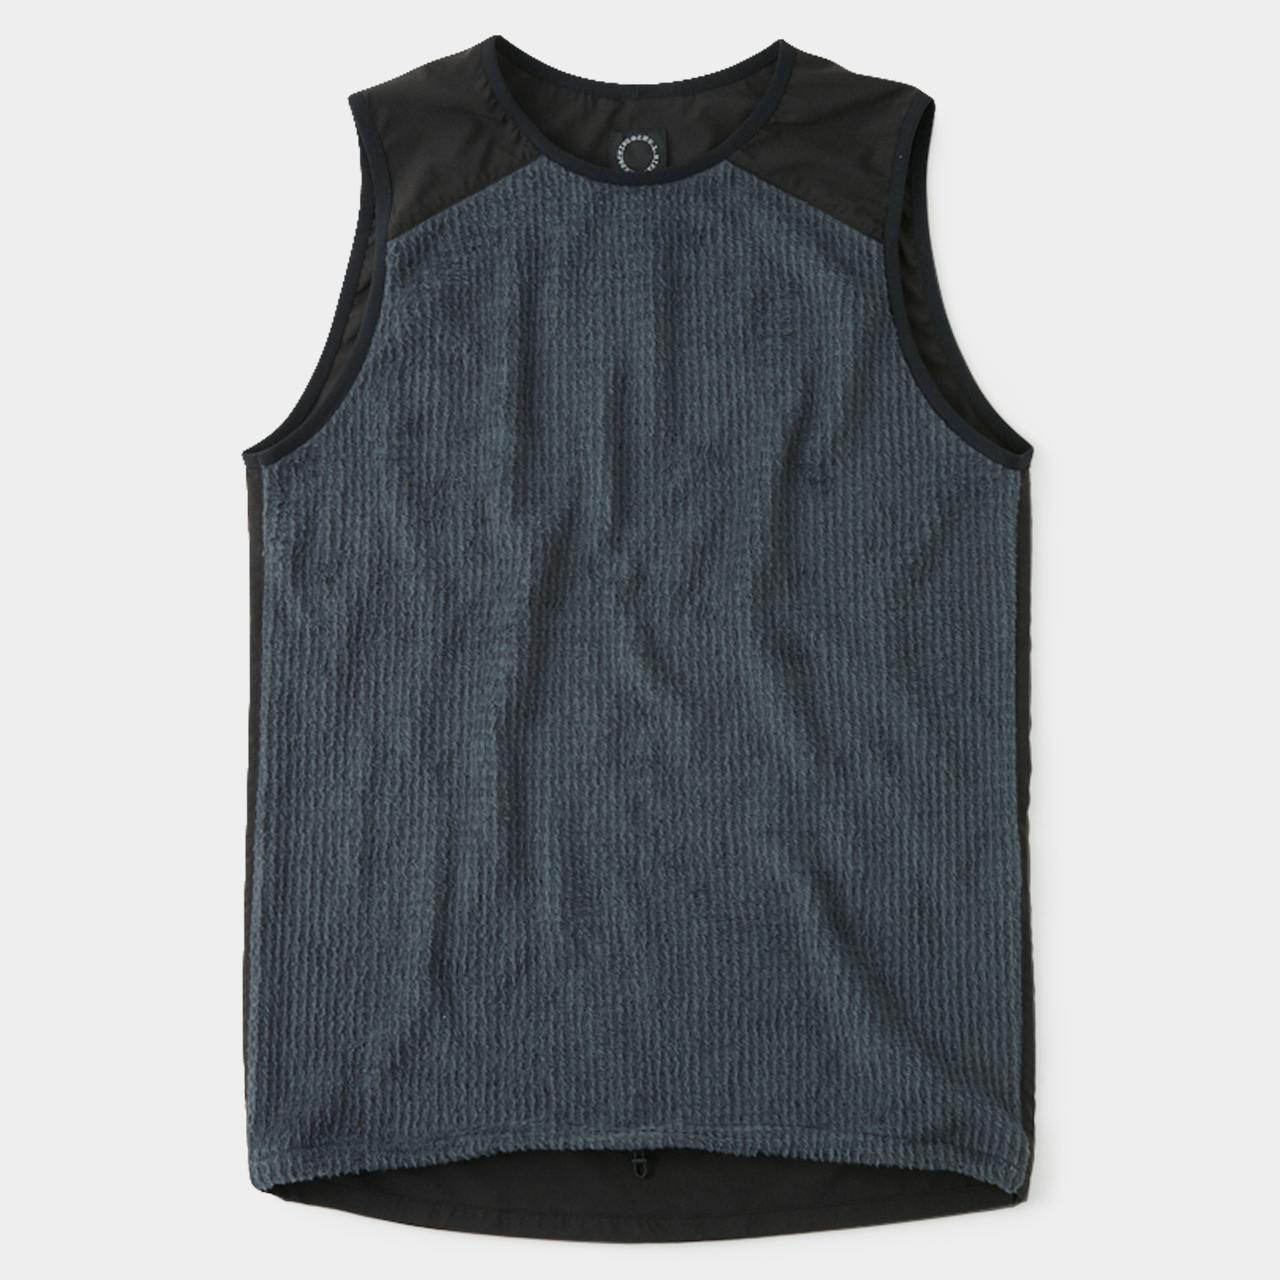 Alpha Vest<br>New Color: Black<br>Stronger, Tougher Back<br>For Sale Nov 23, 18:00 JST